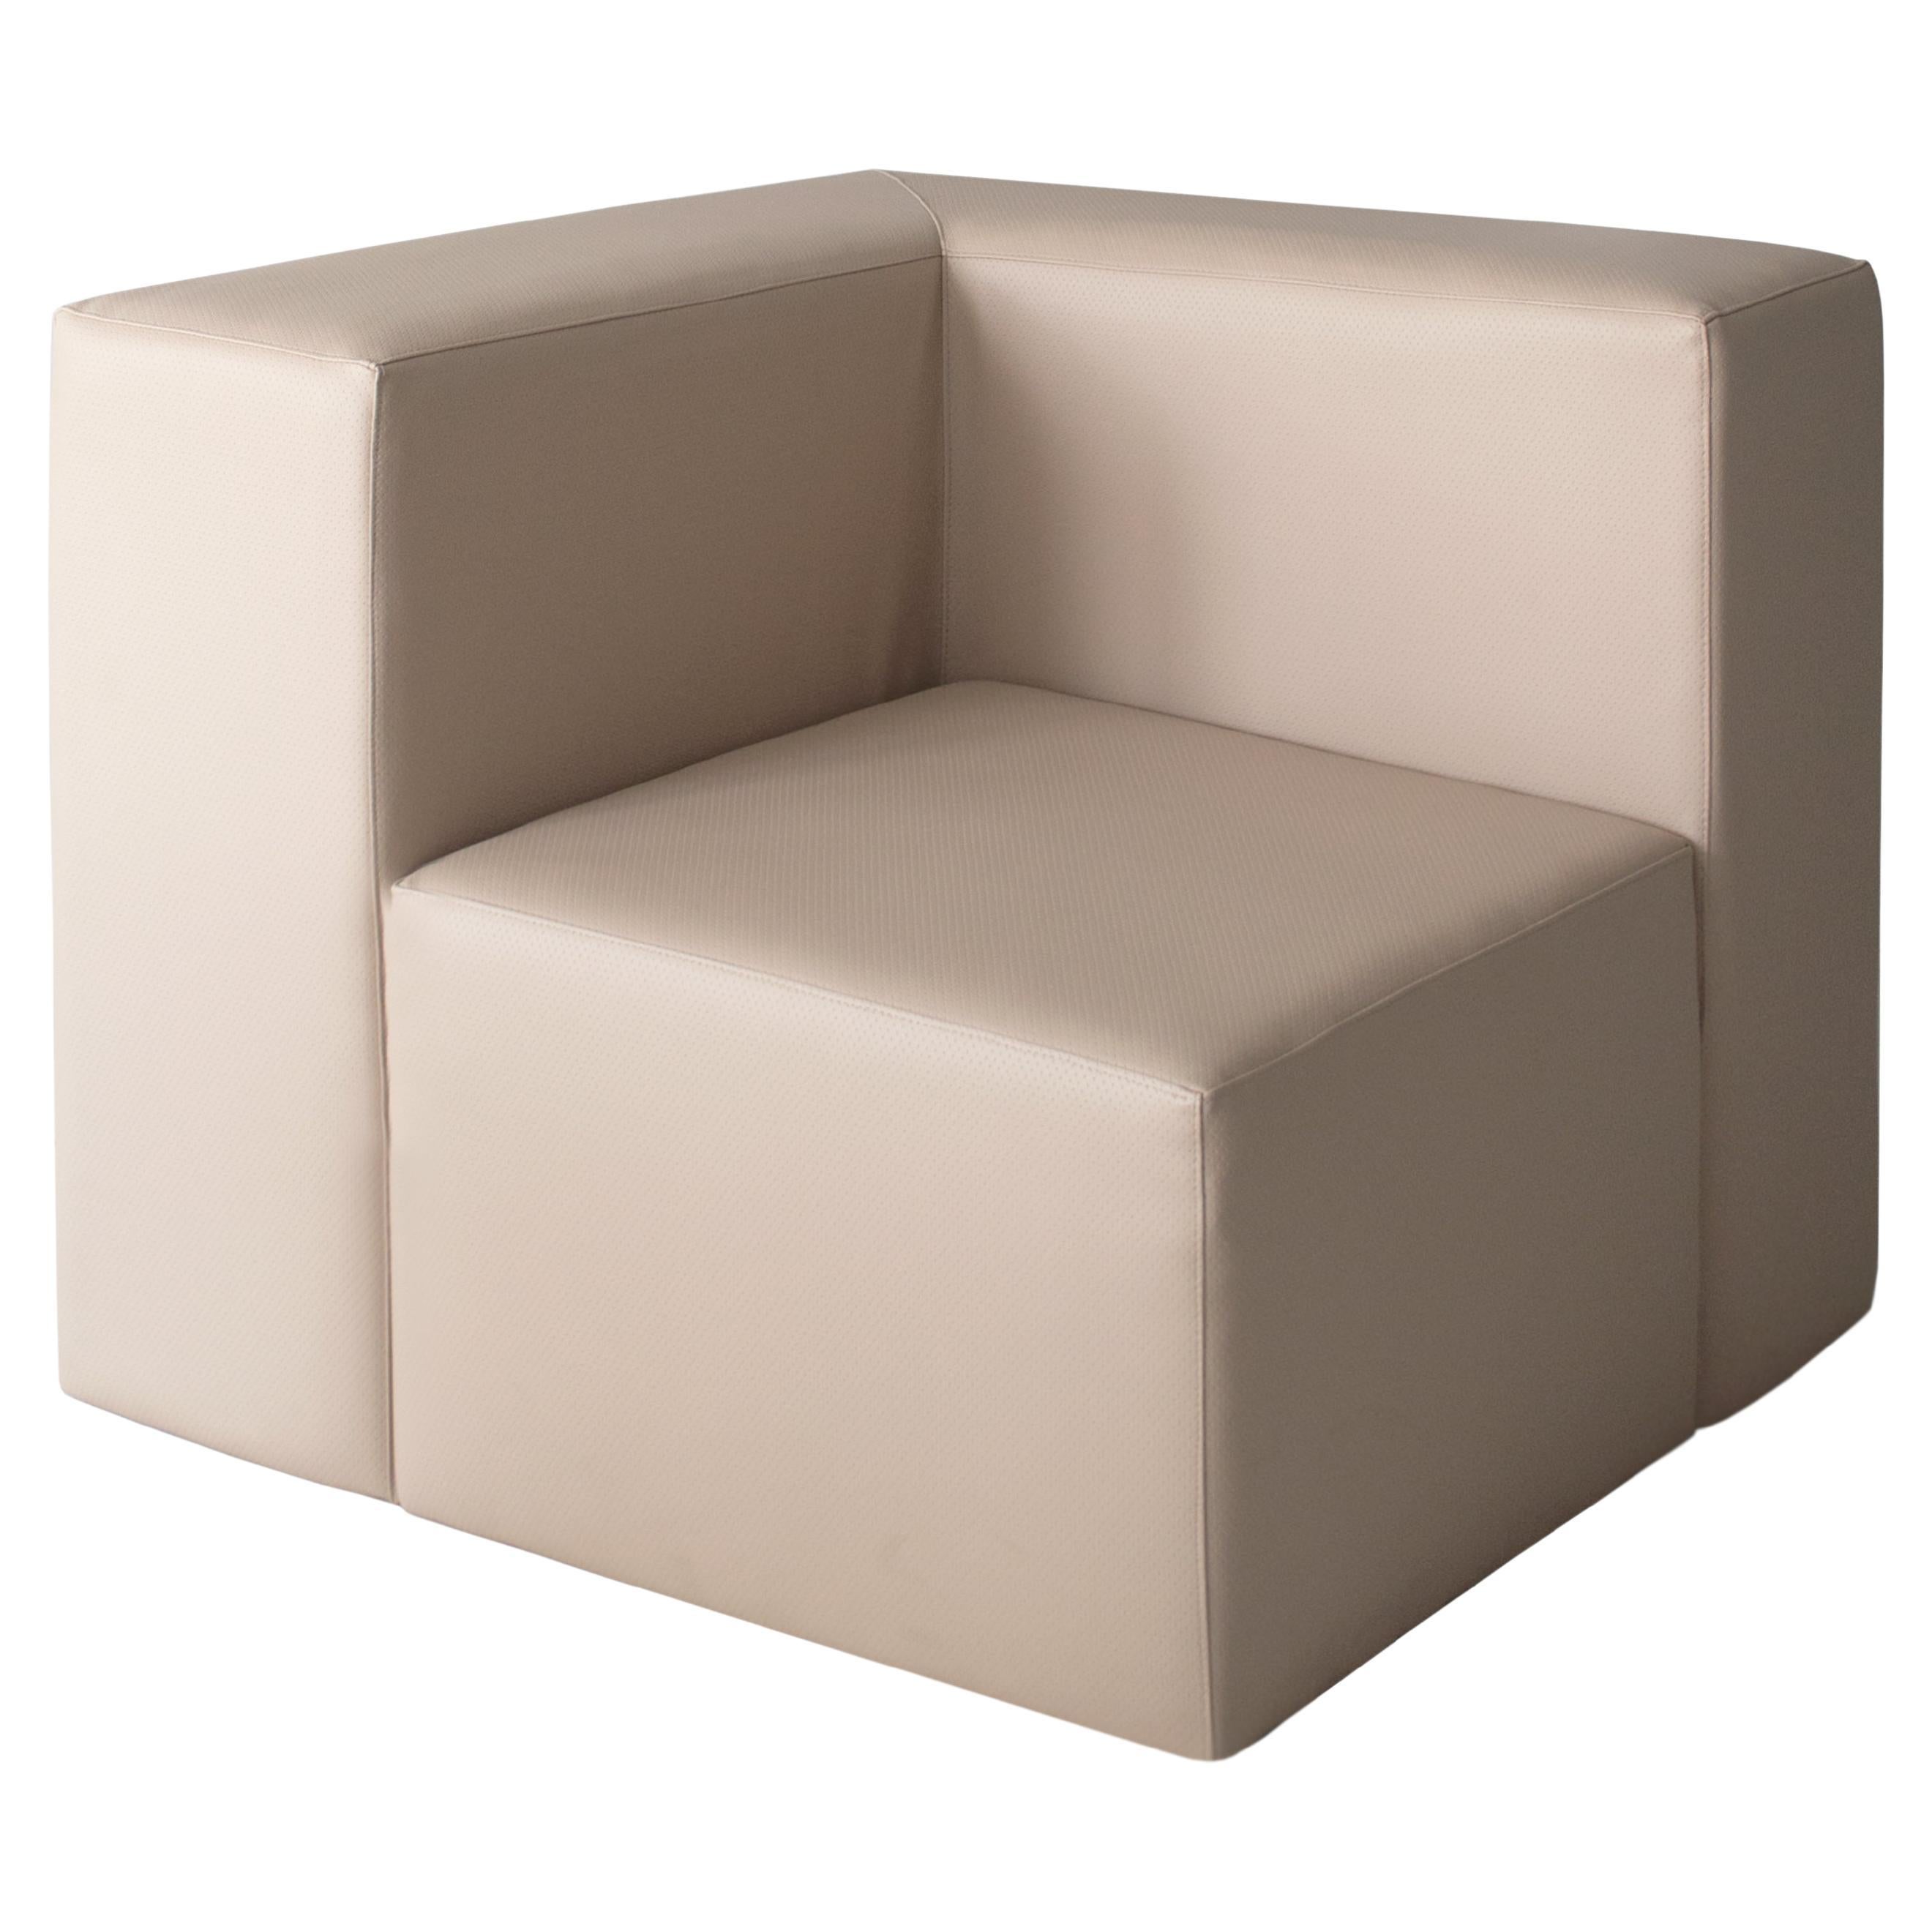 Siège / fauteuil cubique en cuir beige marine